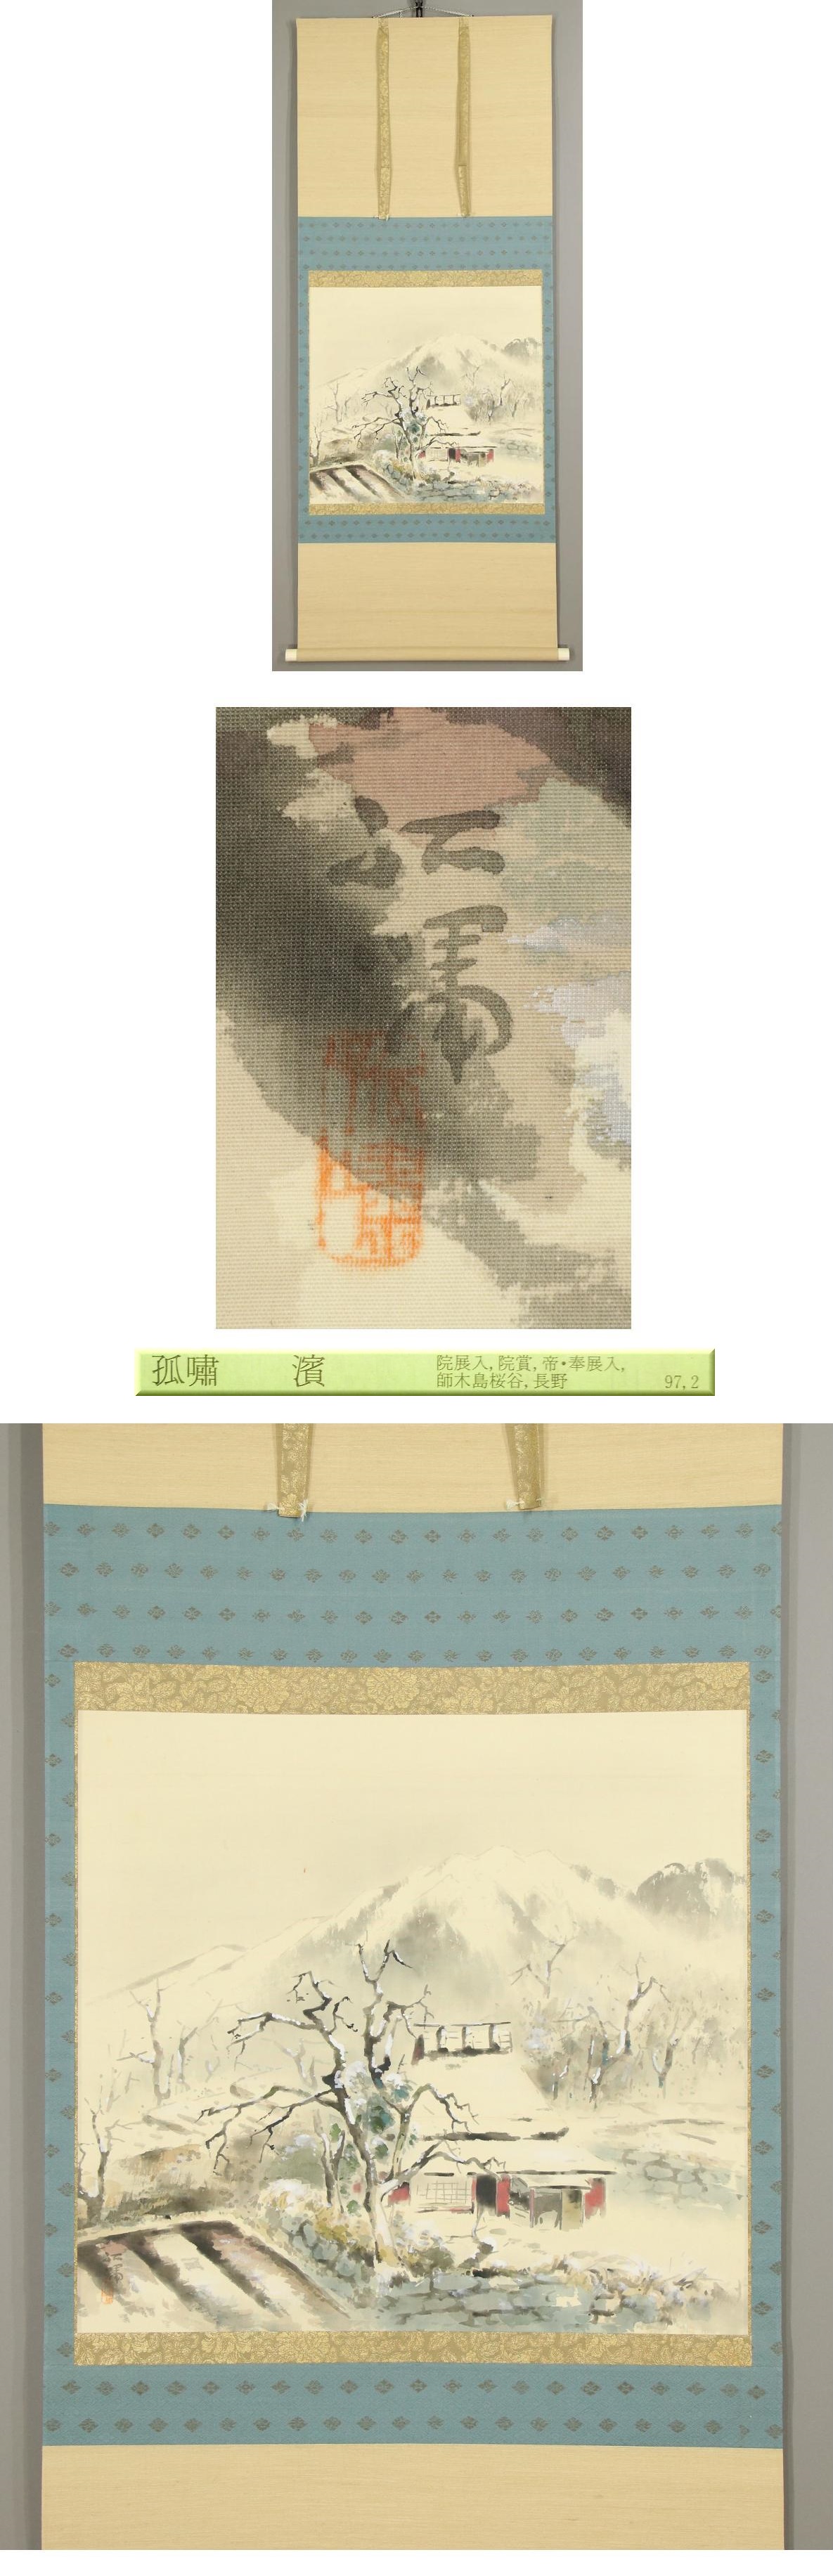 【半価通販】◆浜孤嘯◆雪の大原◆長野県◆共箱◆肉筆◆絹本◆掛軸◆k712 山水、風月